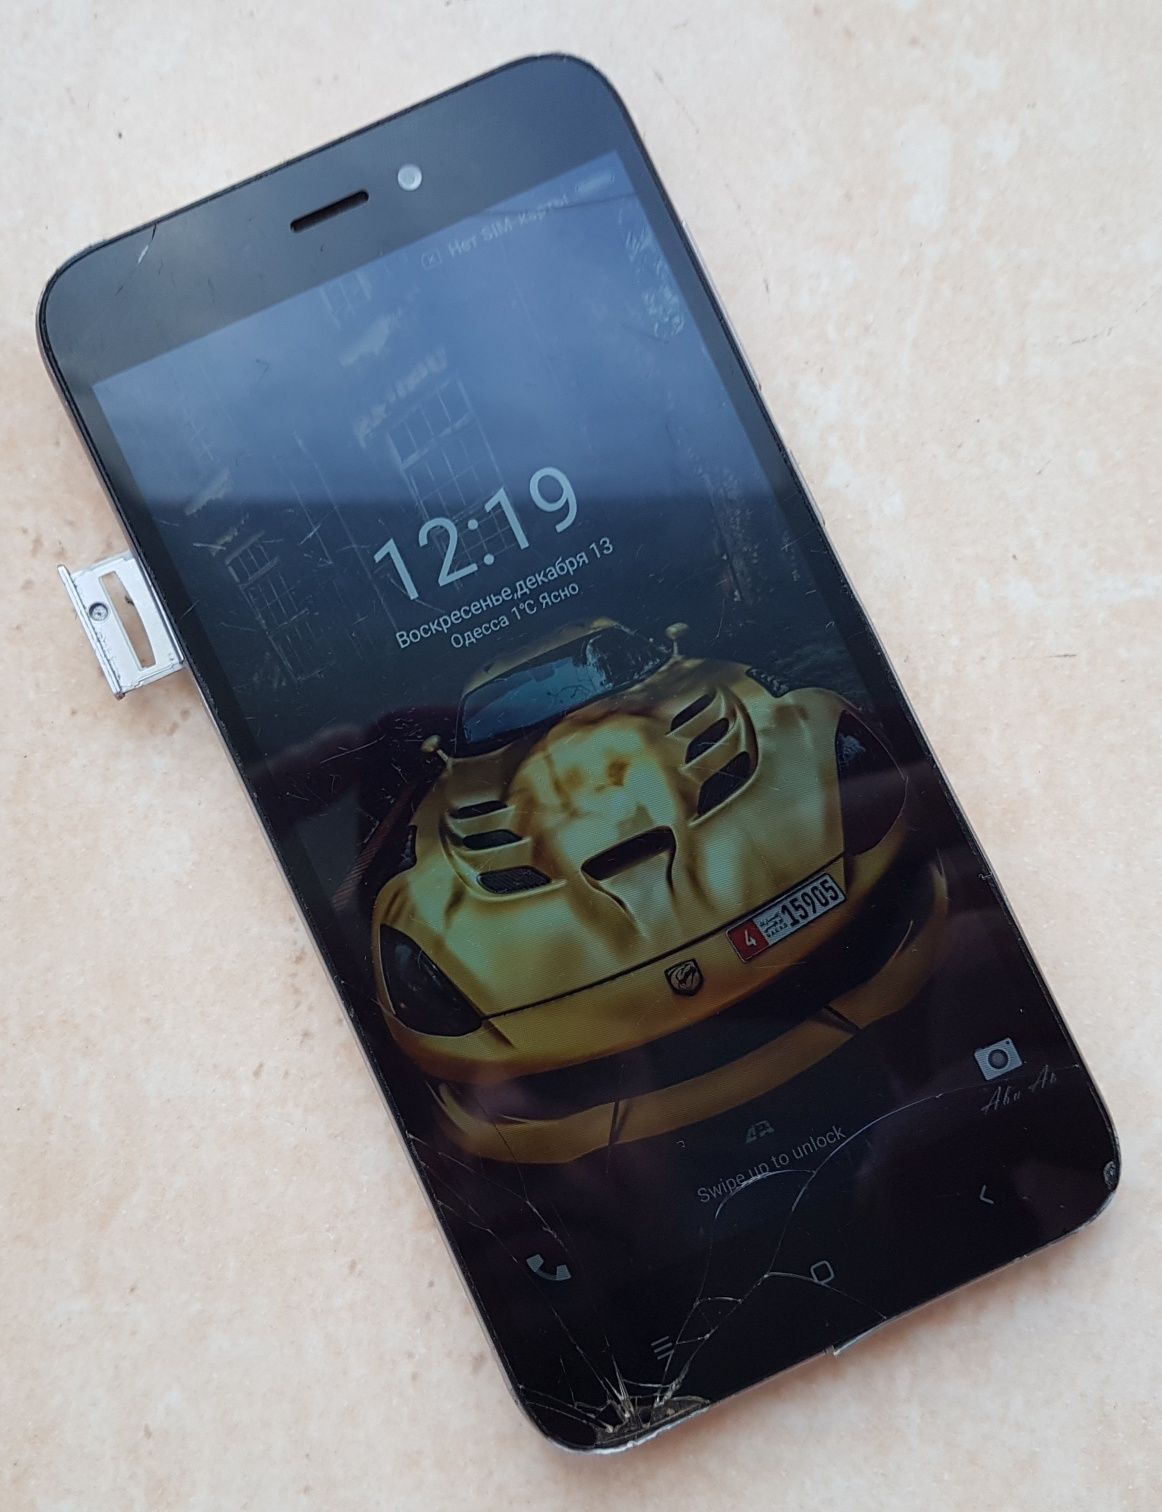 Xiaomi Redmi 5a, 2/16, android 7